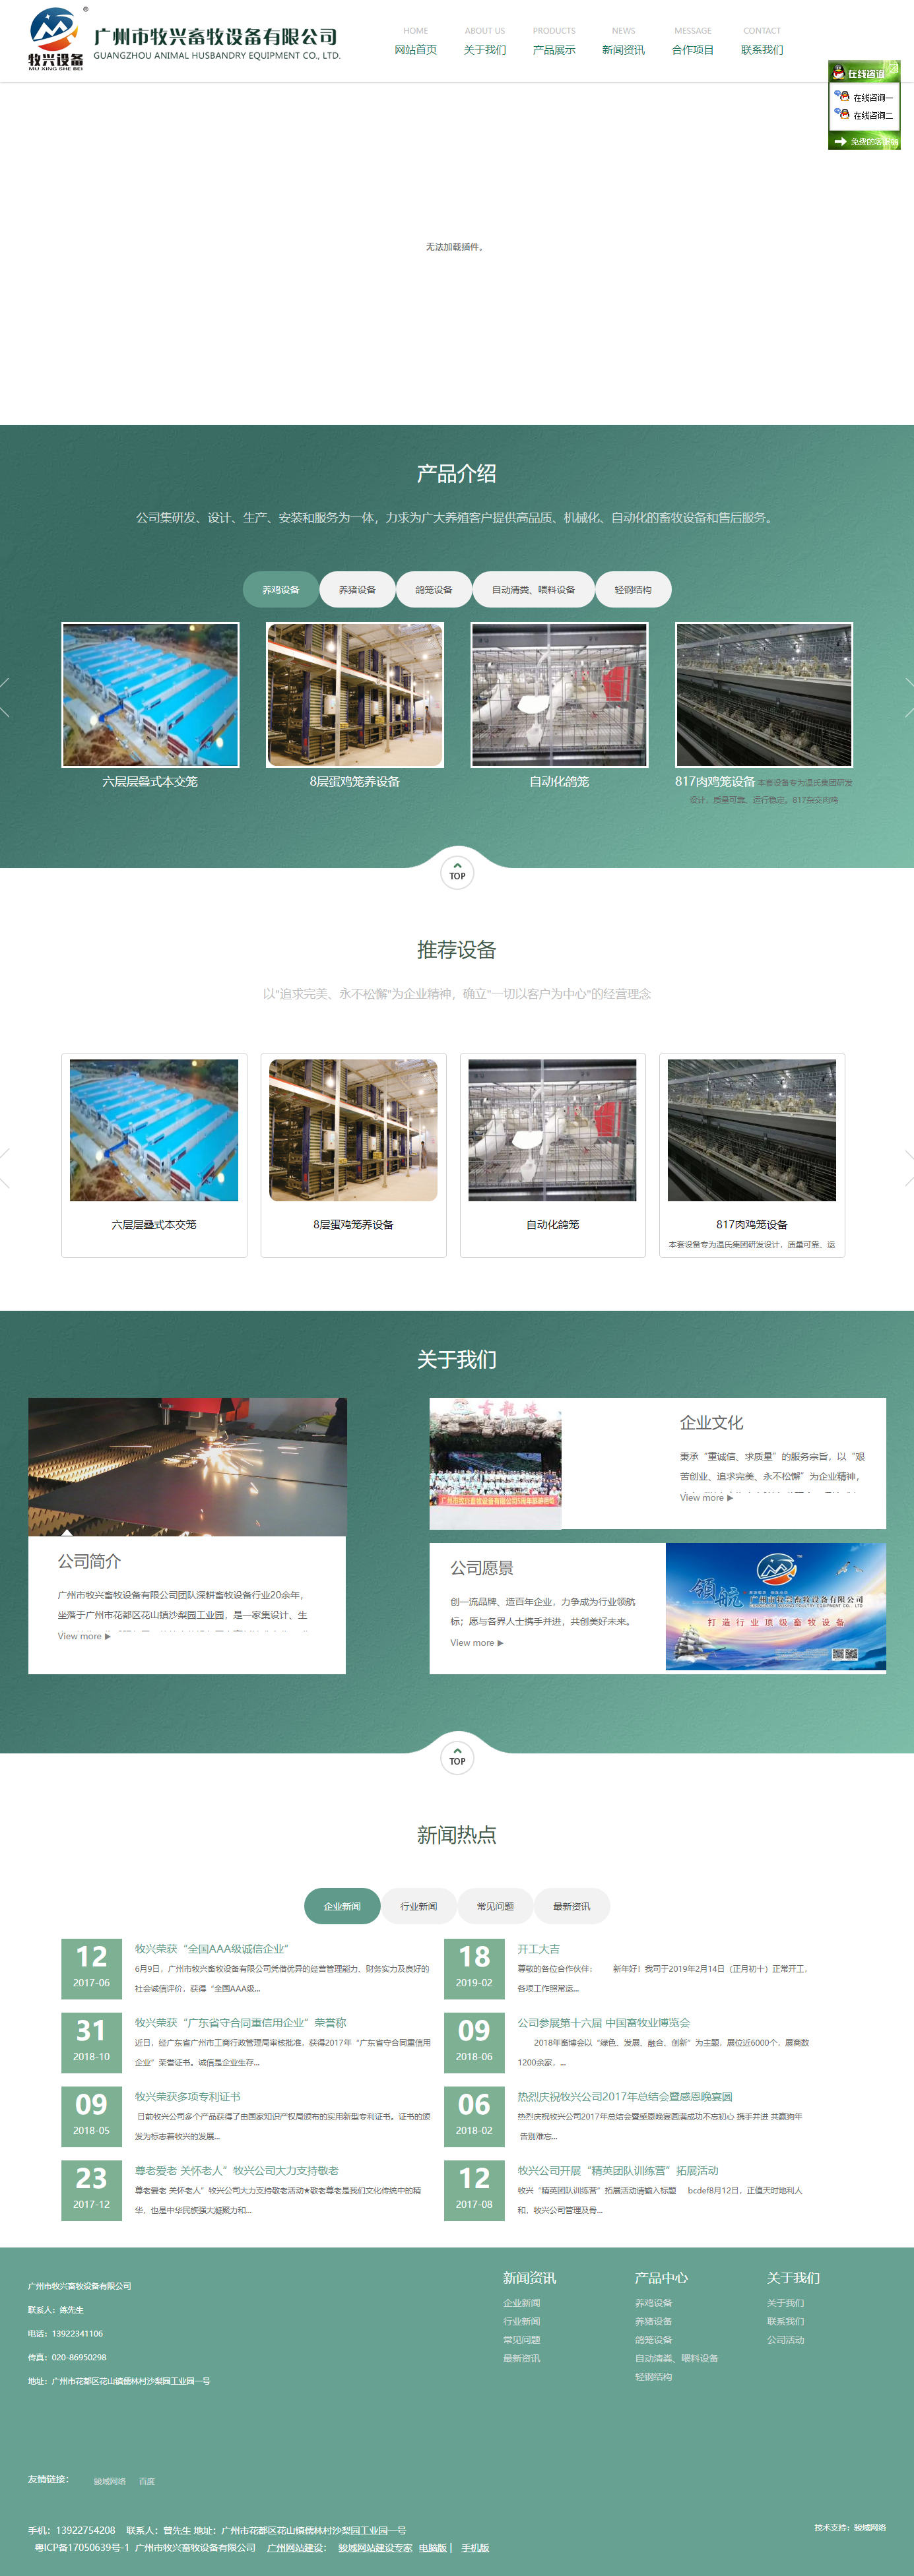 广州市牧兴畜牧设备有限公司网站案例